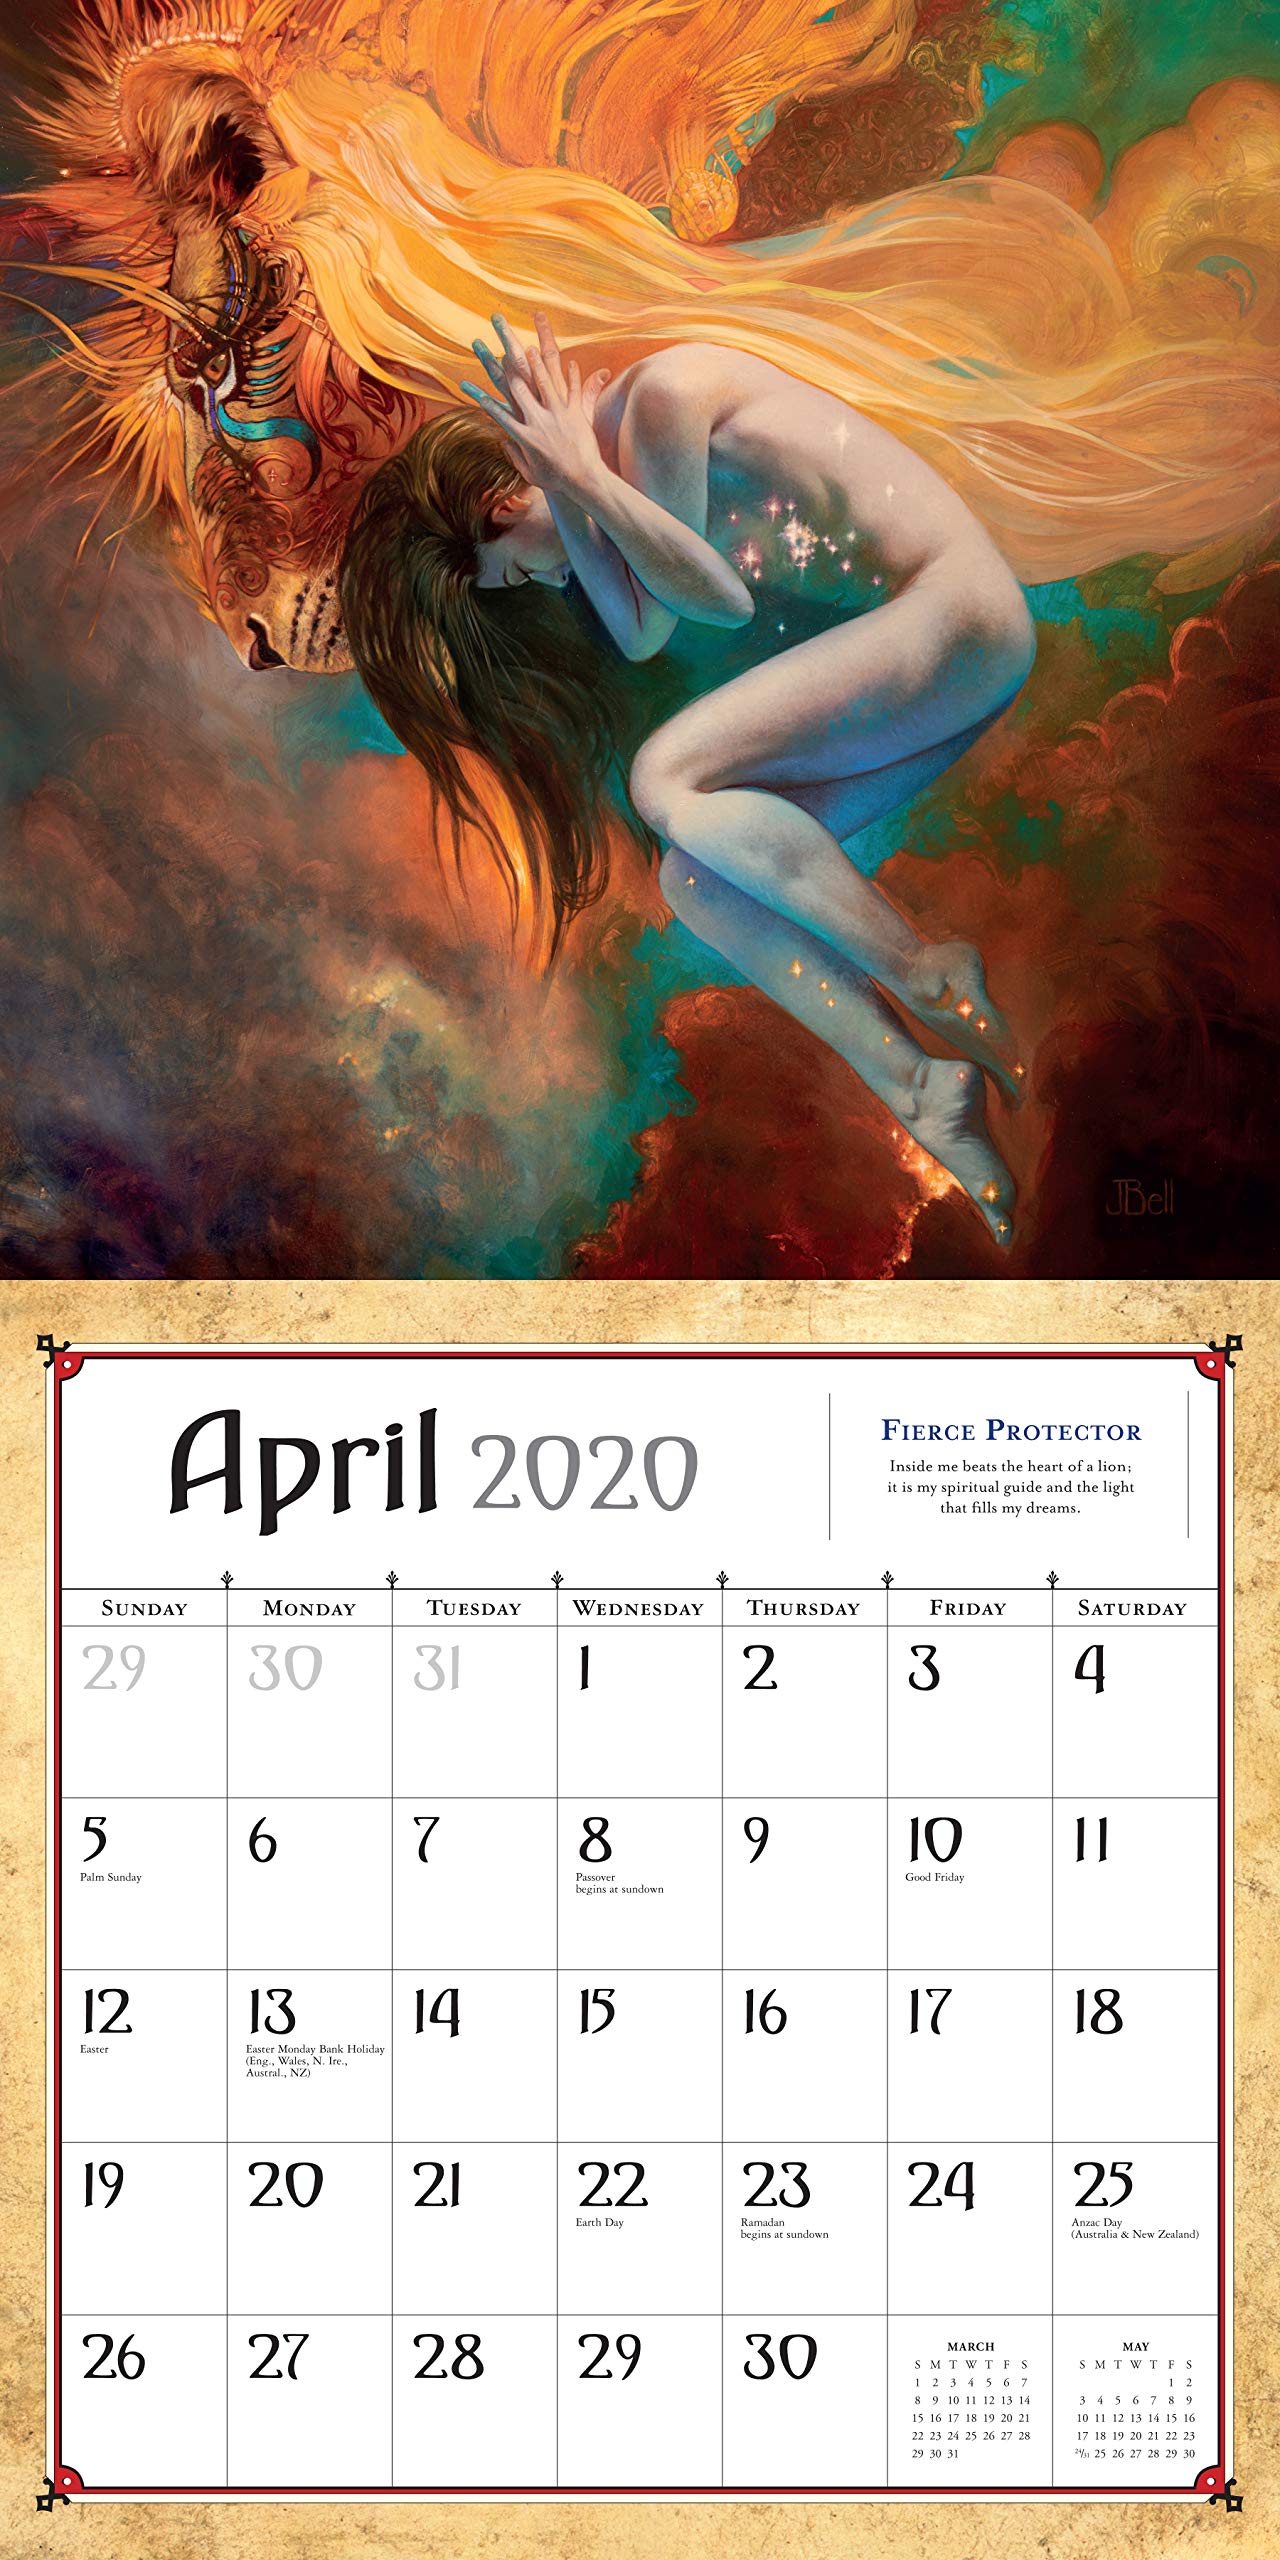 Boris Vallejo & Julie Bell's Fantasy Wall Calendar 2020